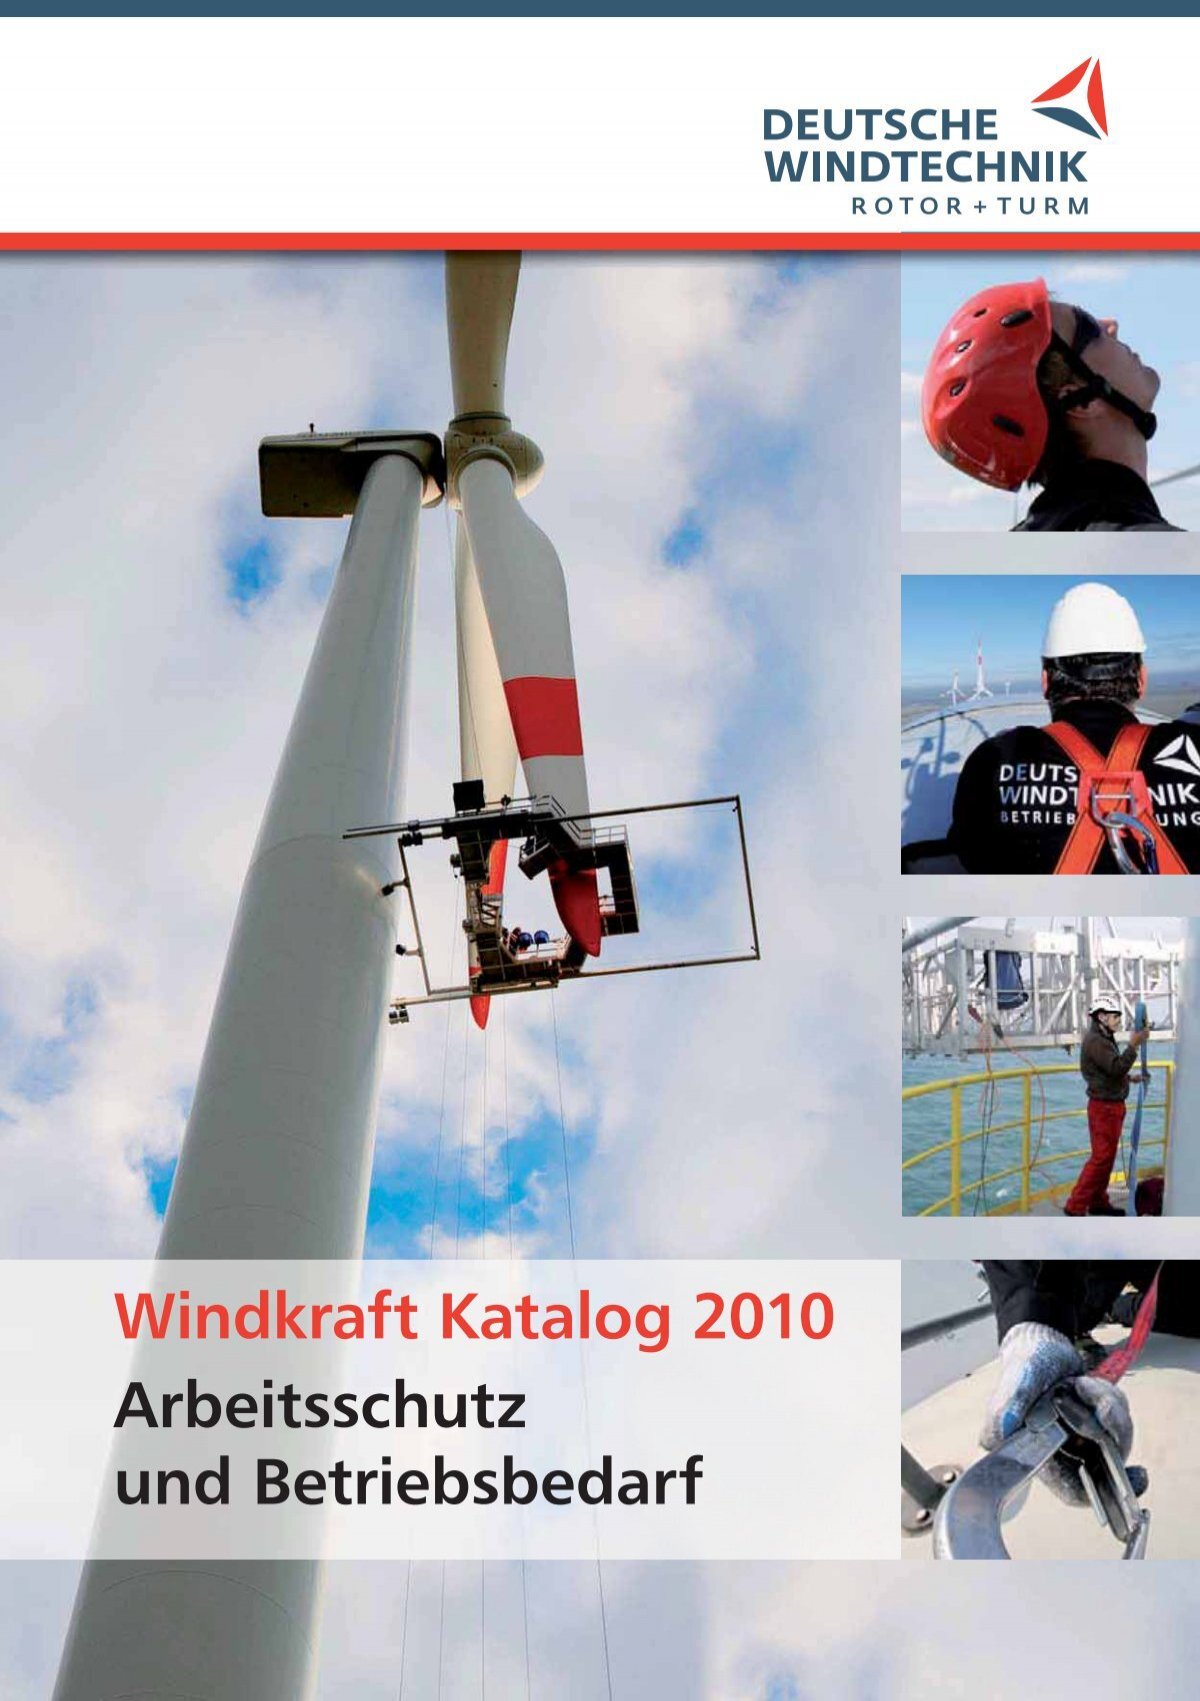 1 - Deutsche Windtechnik